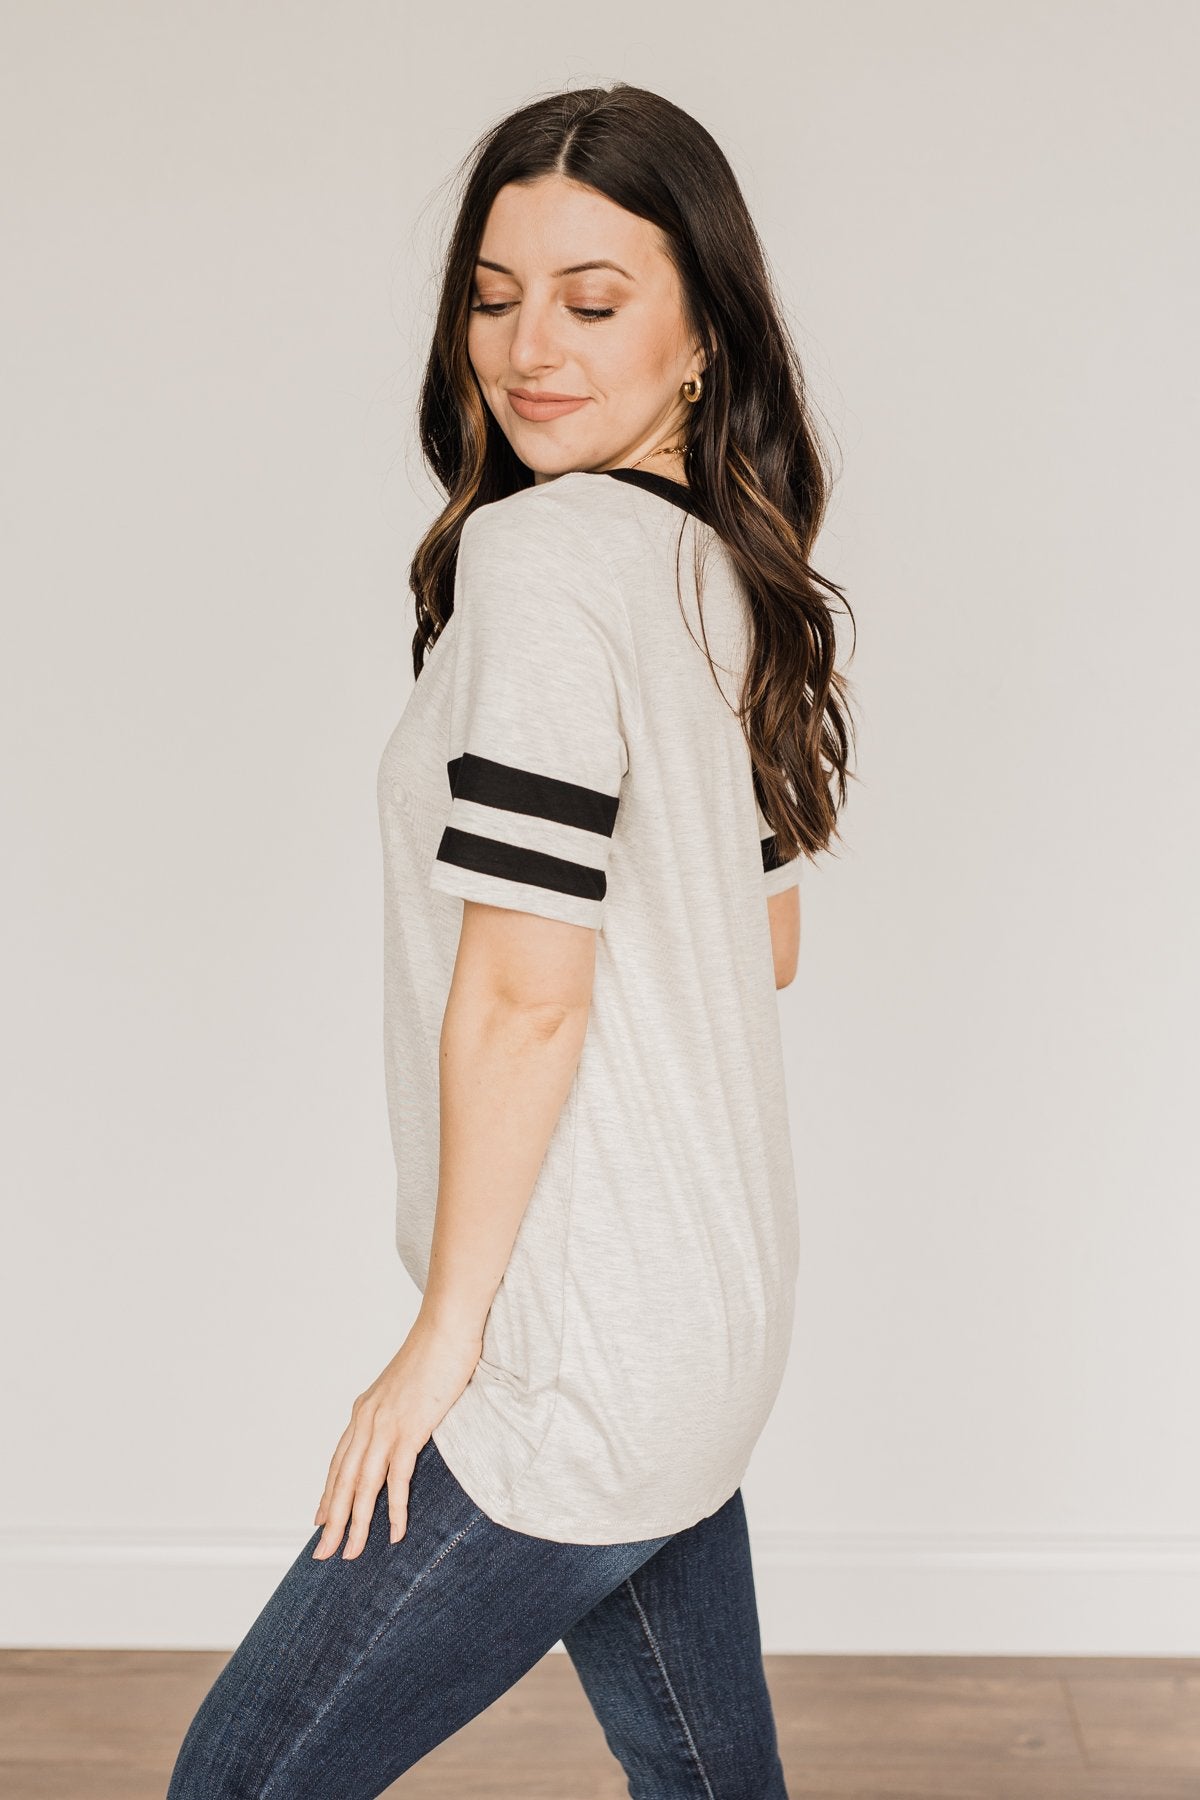 Keep It Simple Varsity Stripe Top- Heather Grey & Black